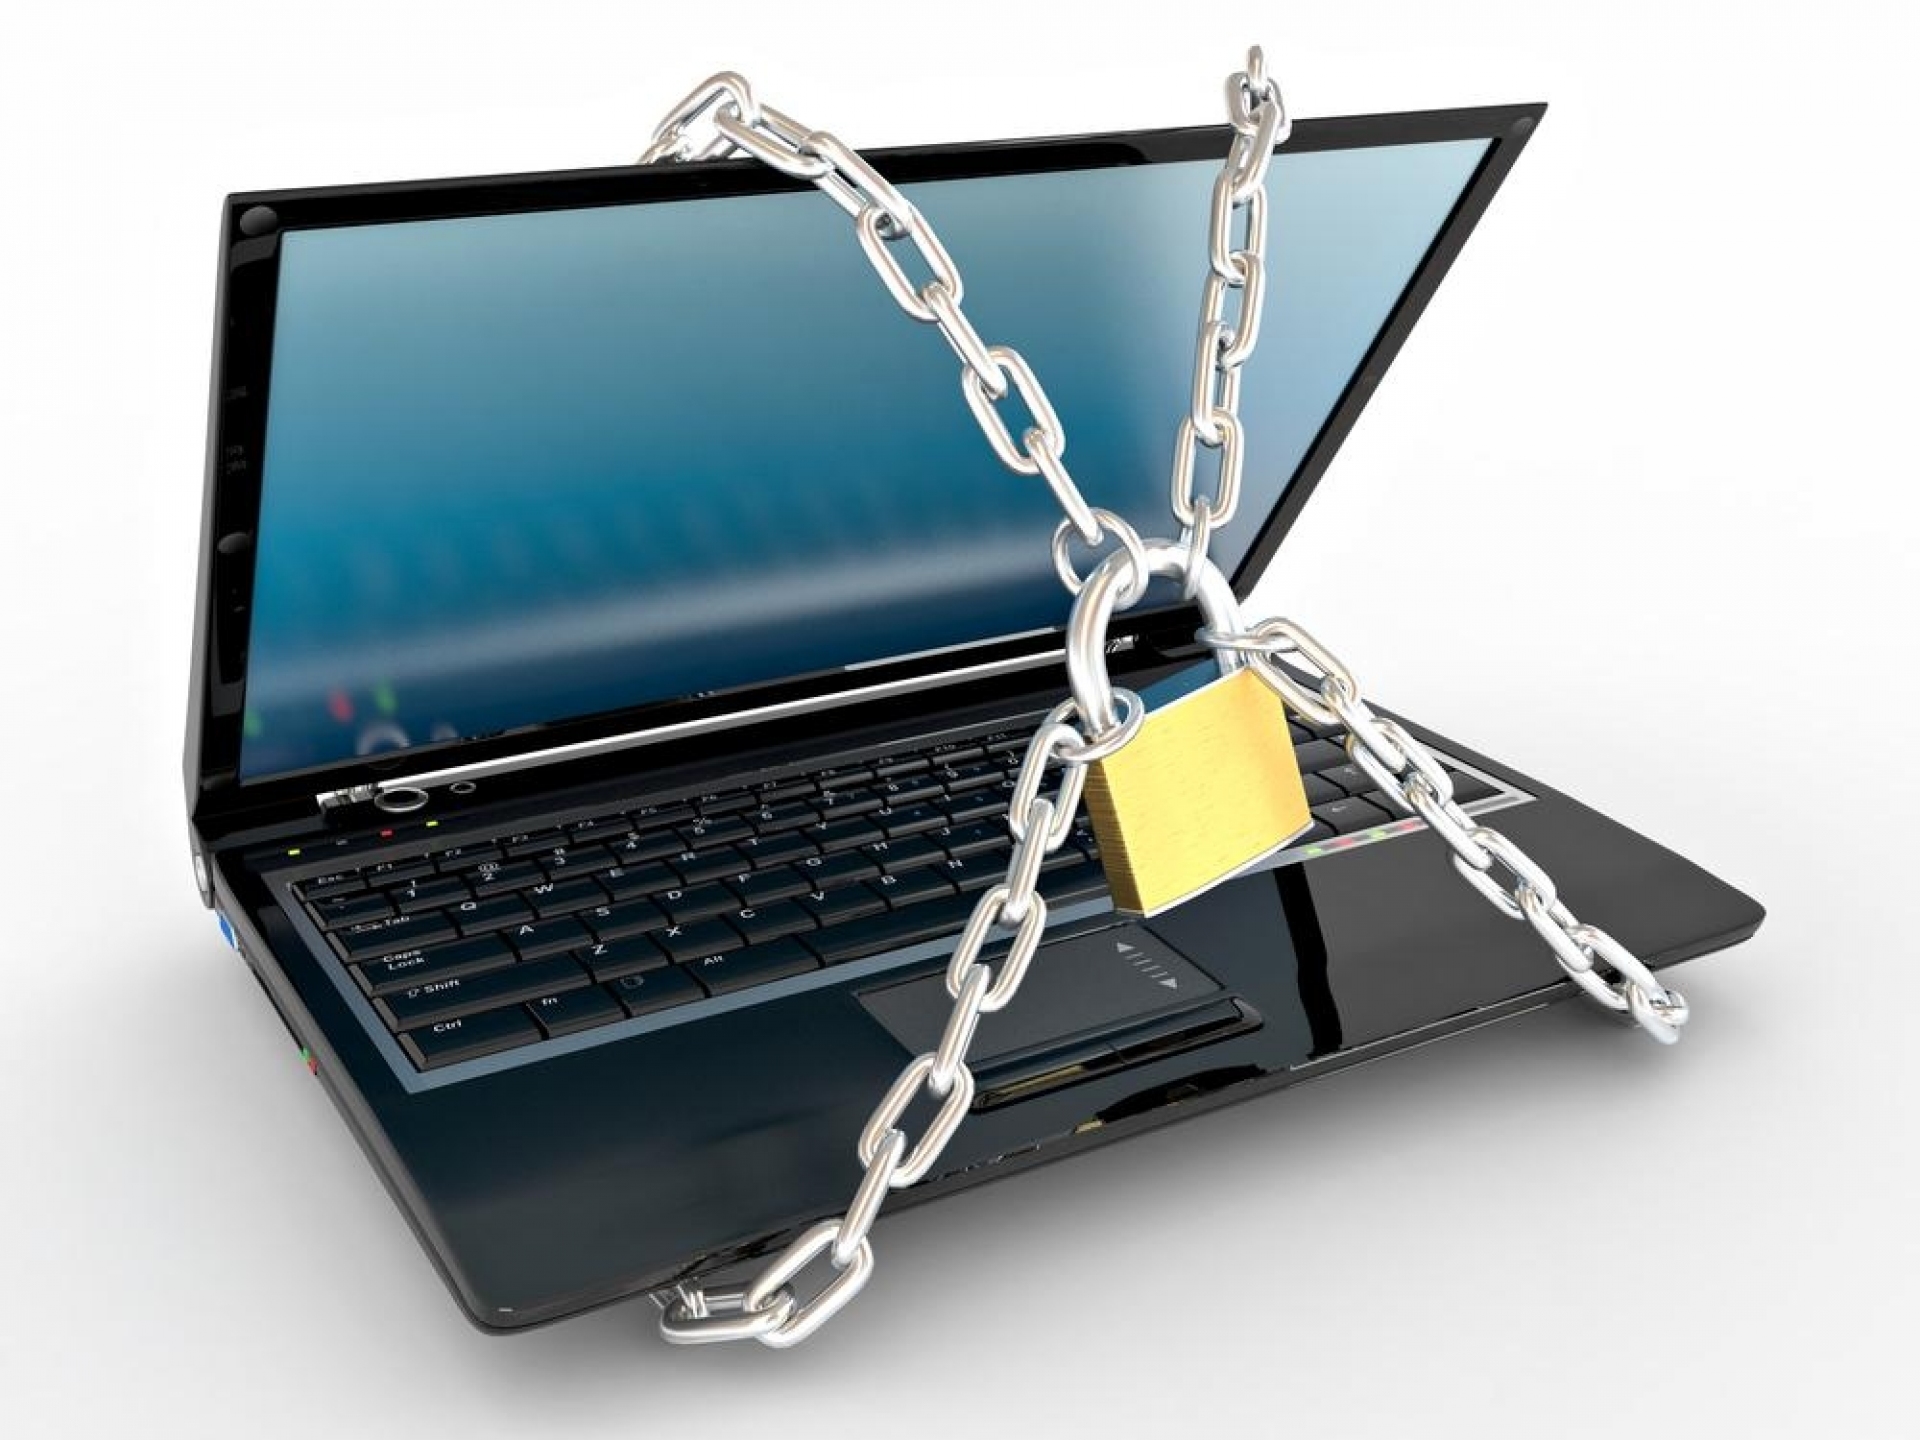 Безопасность и конфиденциальность данных. Защита компьютера. Ноутбук под замком. Компьютер с замком. Компьютер в цепях.